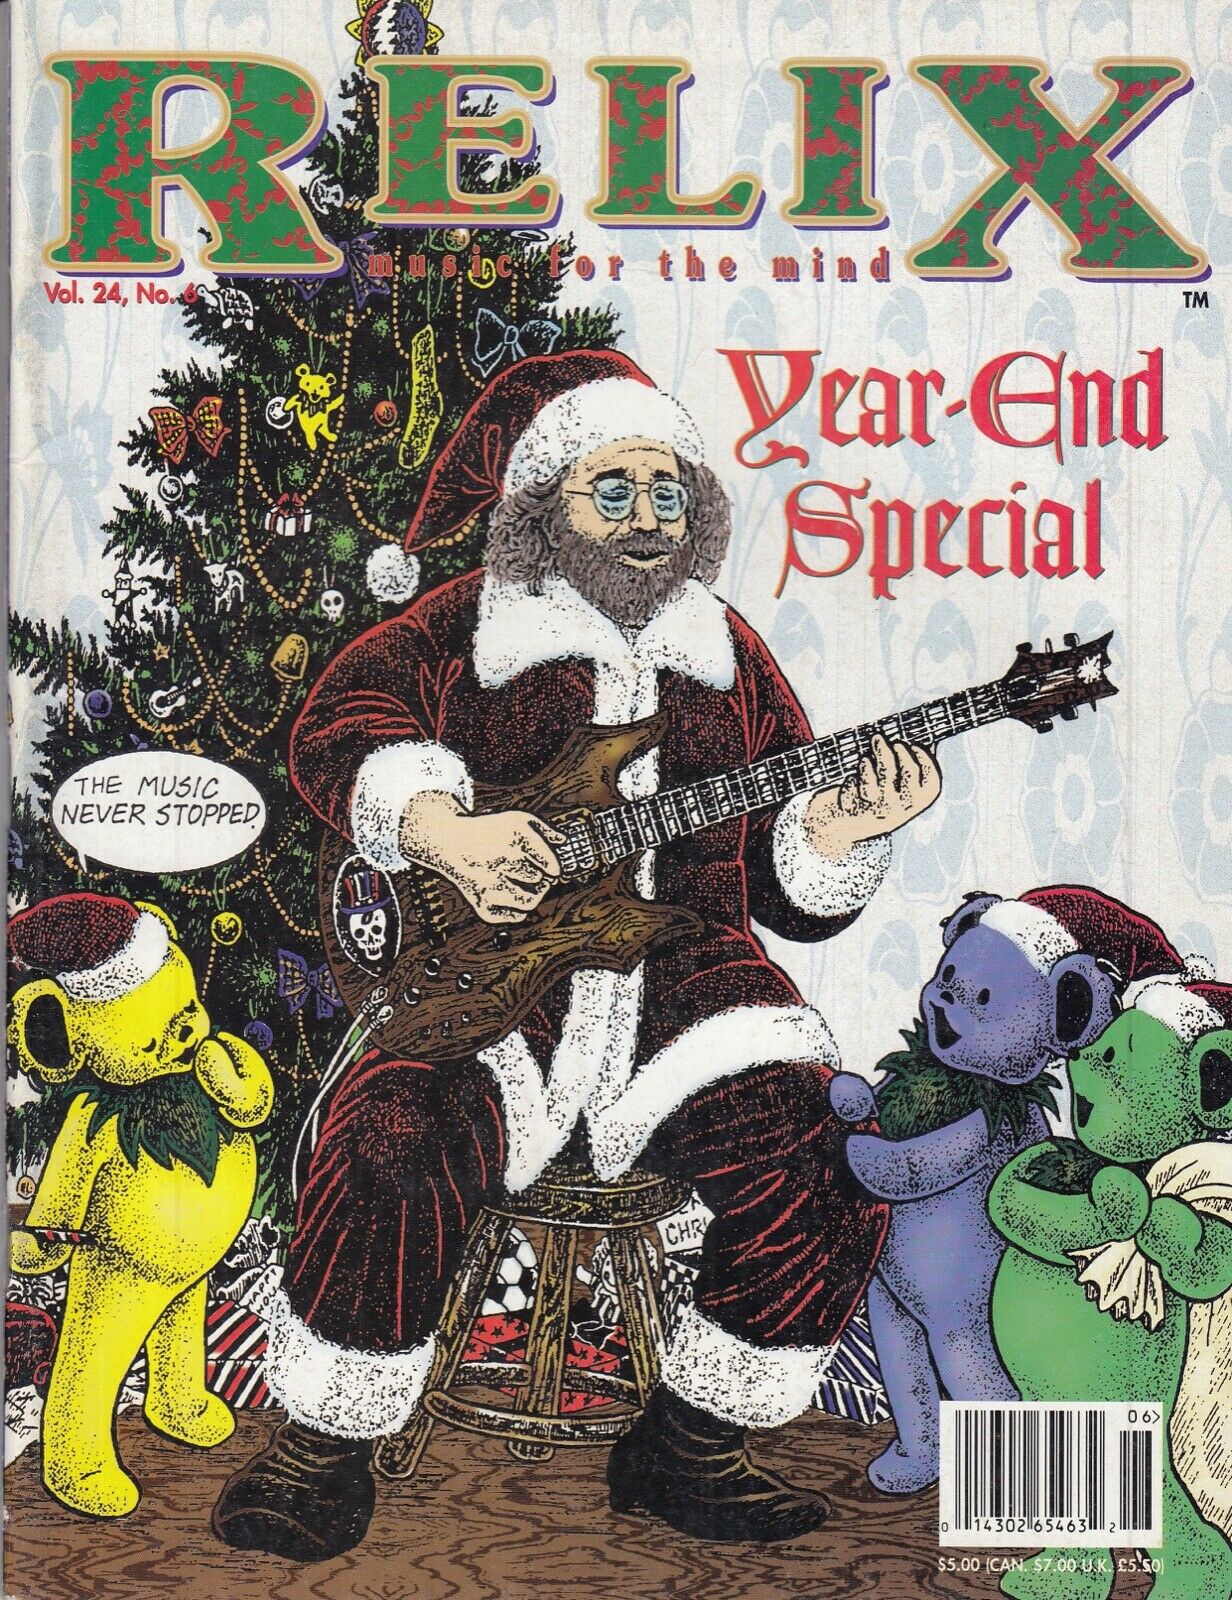 Jerry Garcia Relix Mag. New 0143026546326 Vol.24 No.6 H.o.r.d.e. Furthur Fest